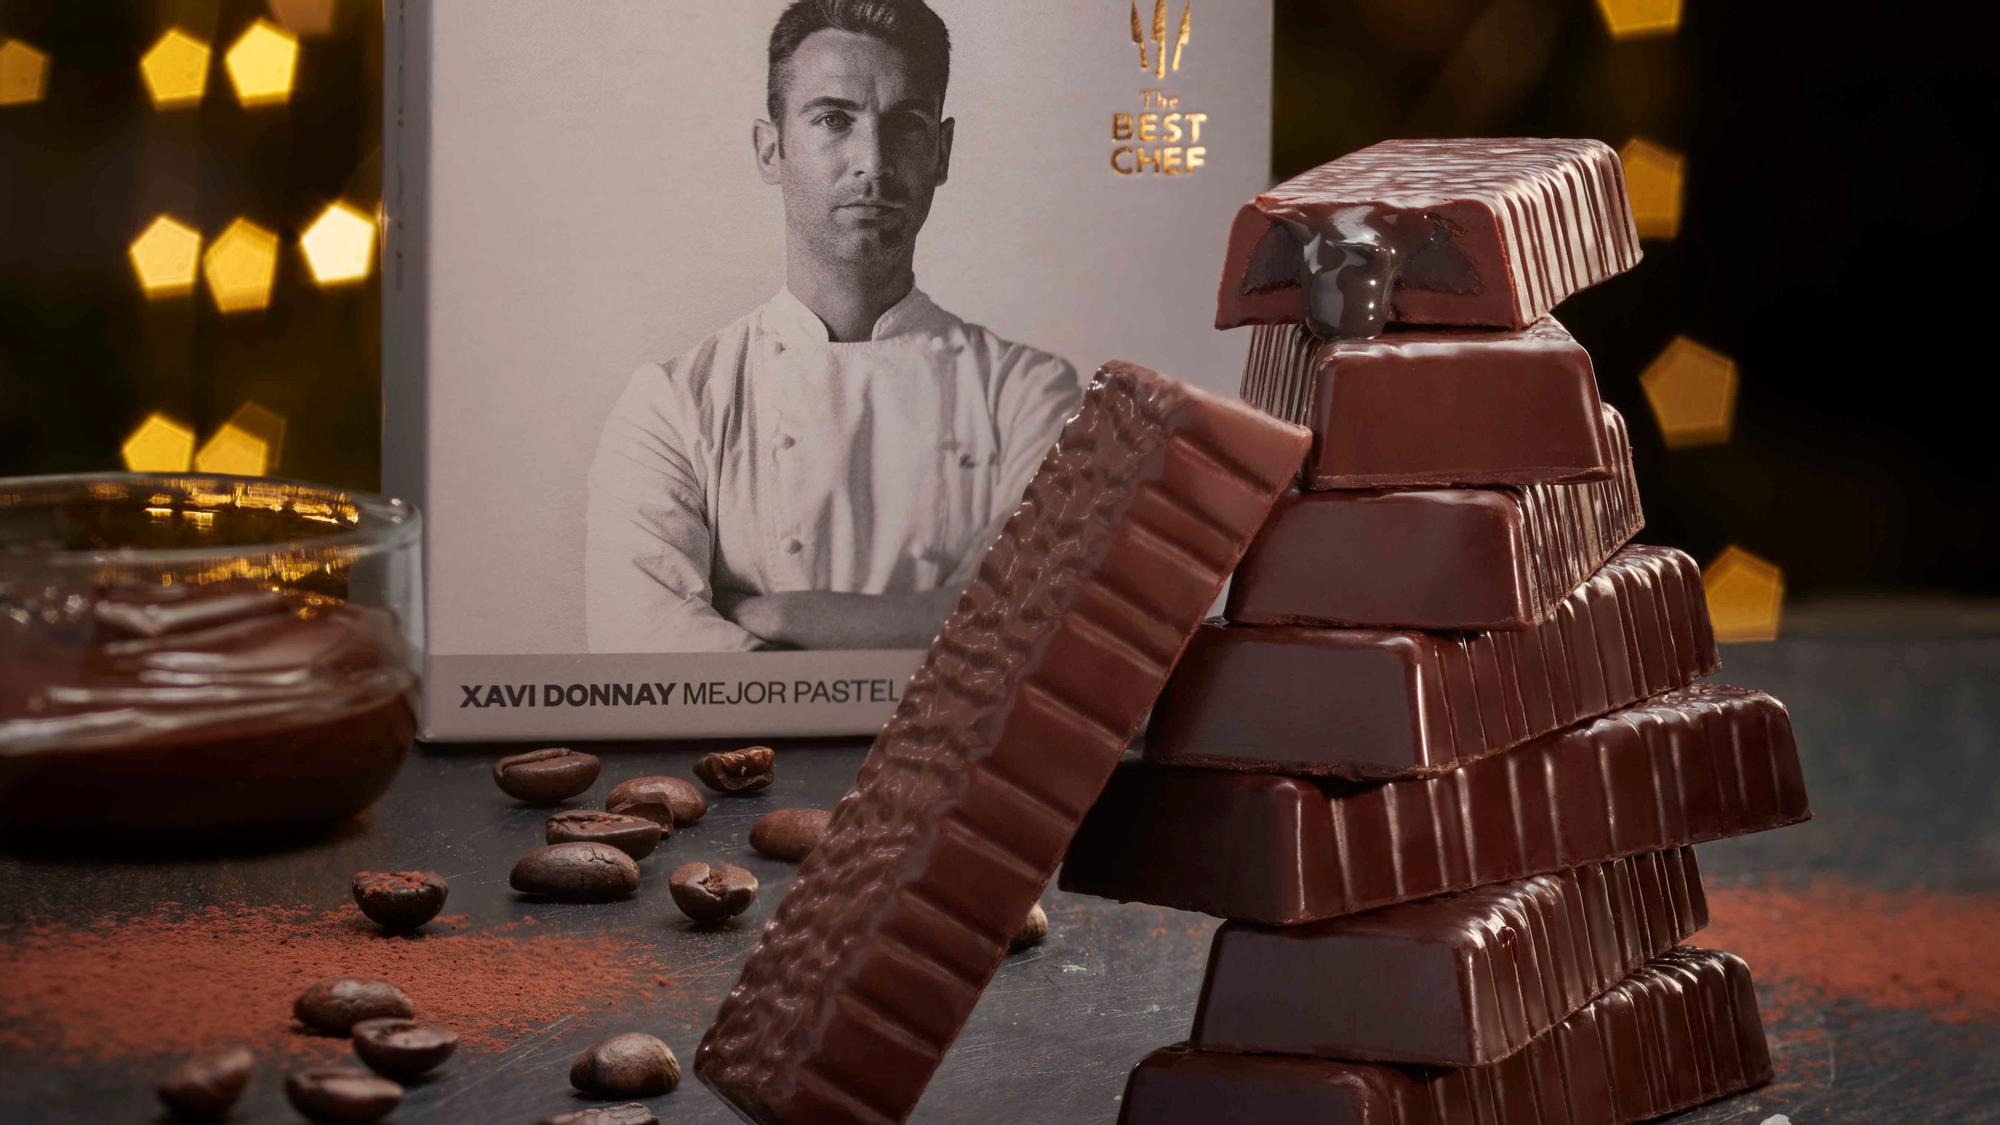 El turrón que Xavi Donnay, el mejor pastelero del mundo de 2020, ha creado para Lidl.